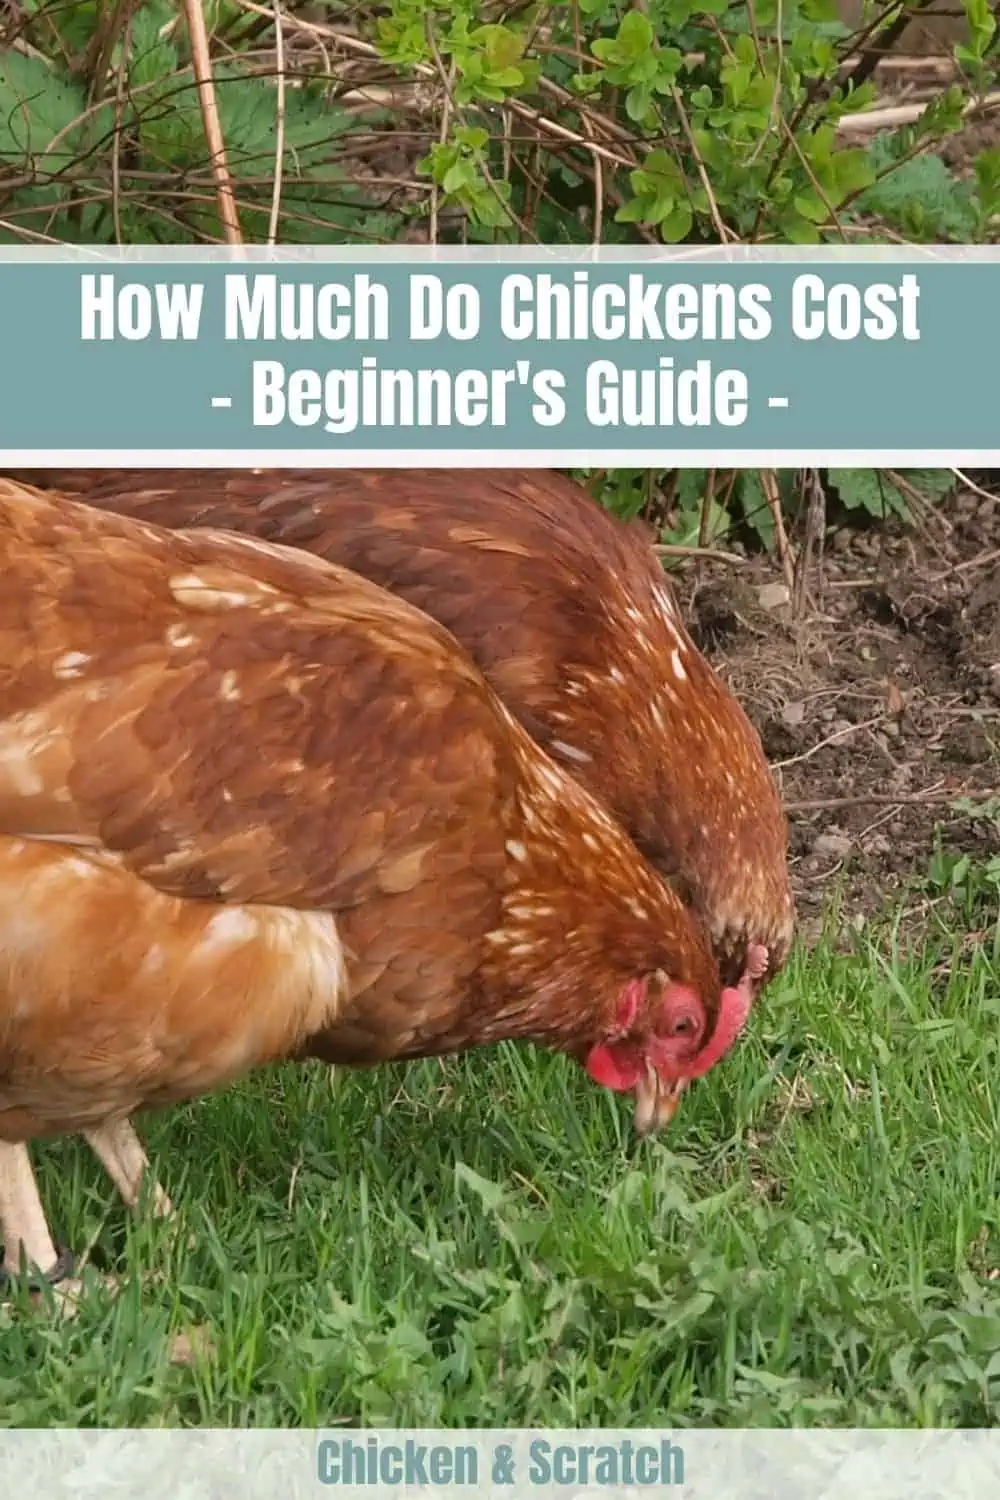 Quanto custam as galinhas - Guia para principiantes